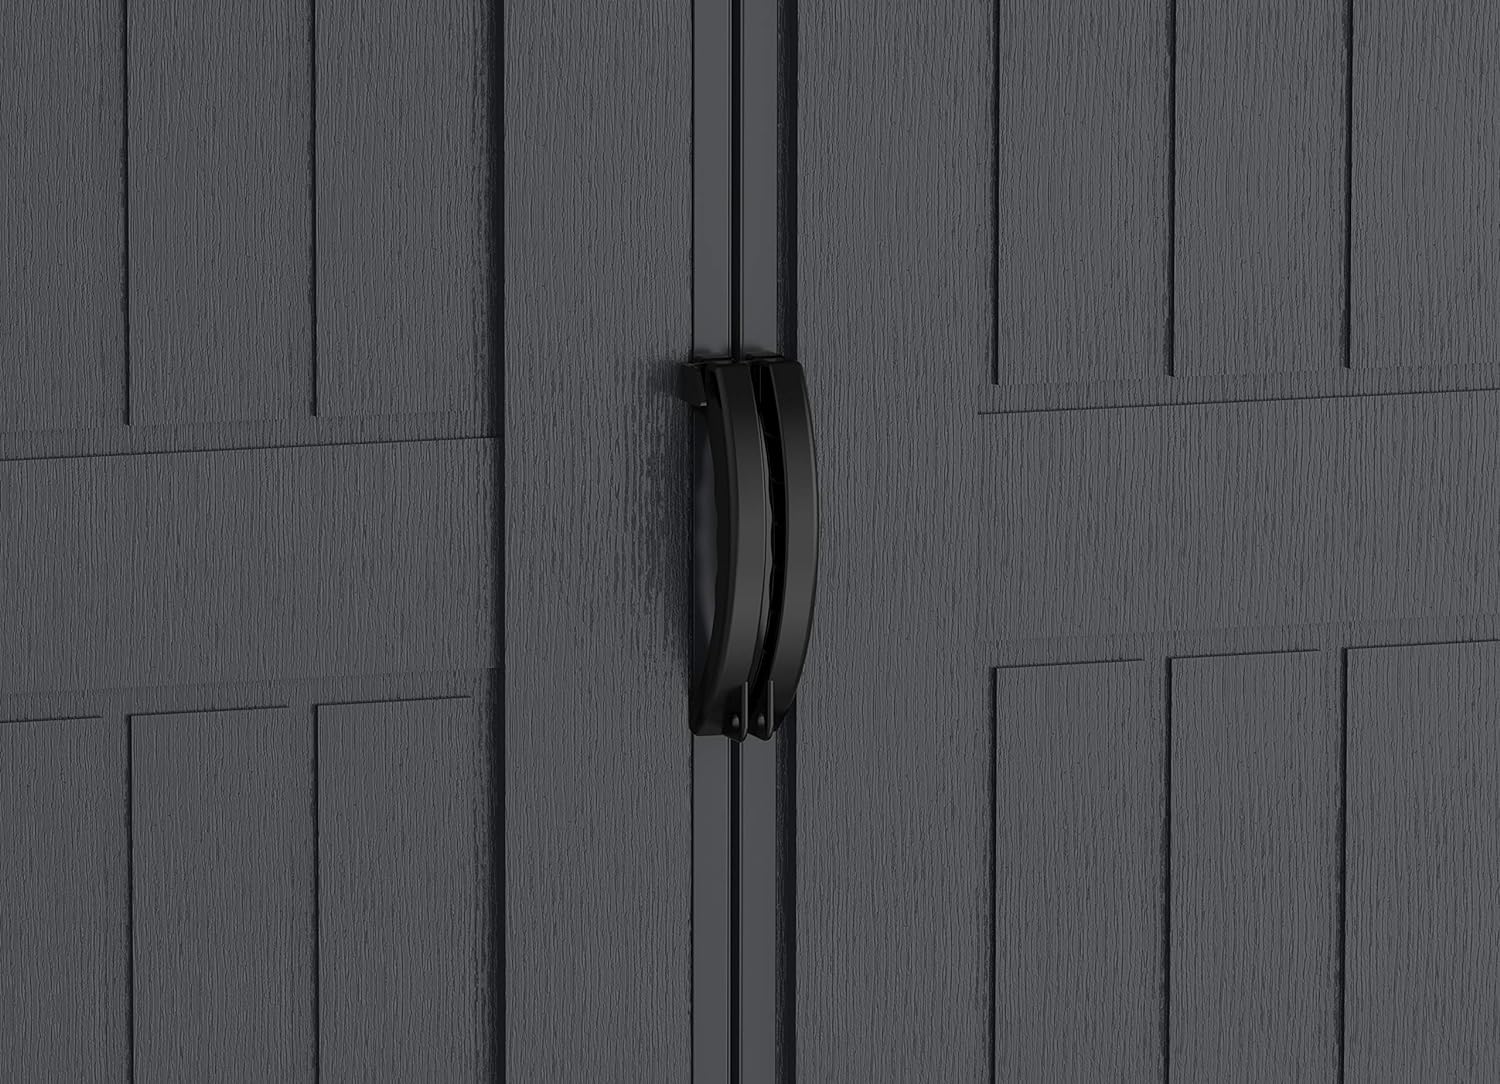 דלתות כפולות רחבות עם הכנה למנעול.